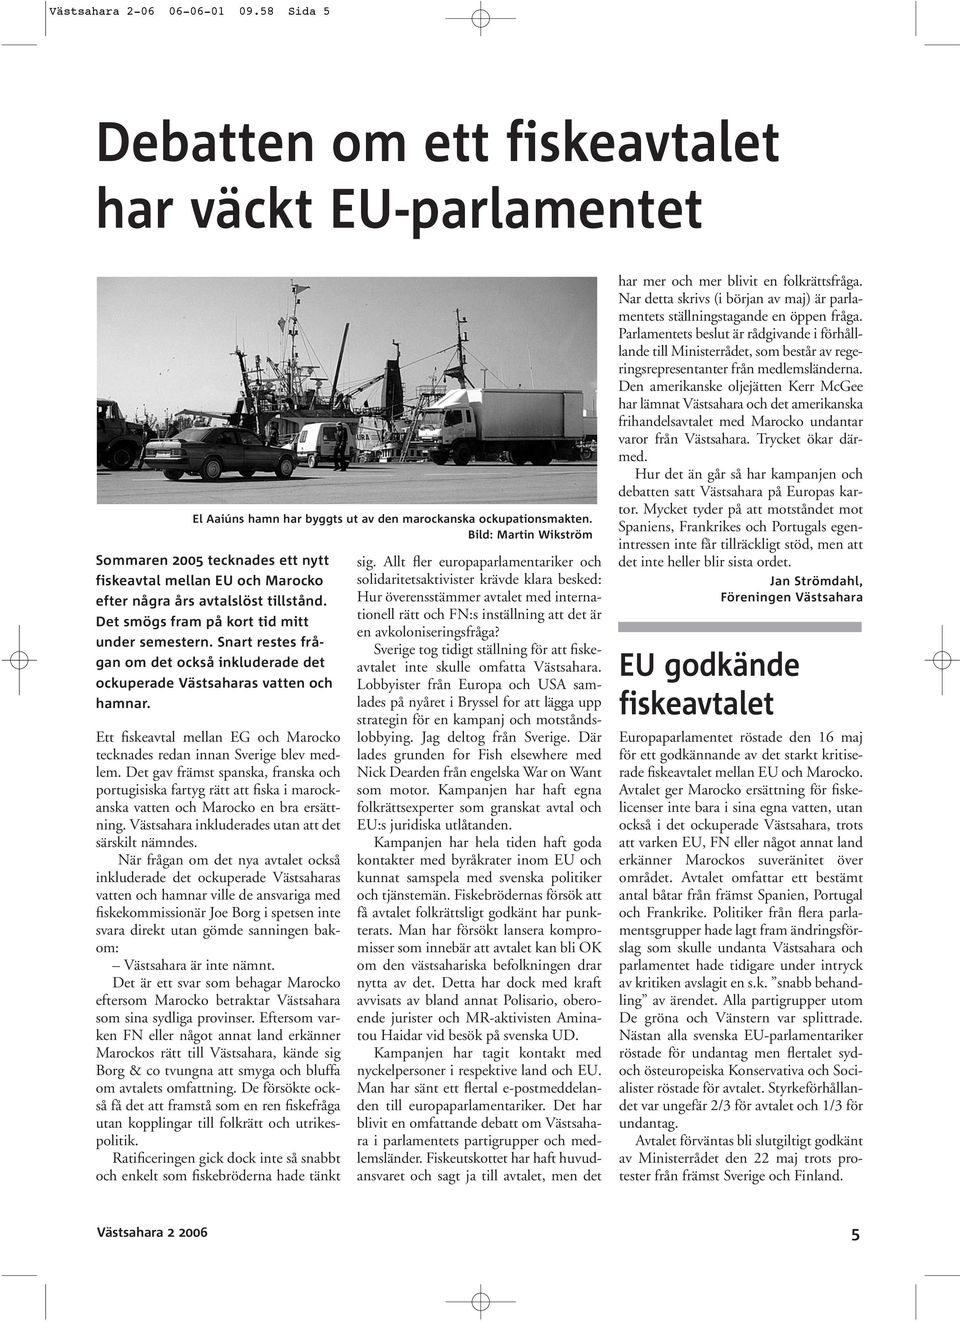 Snart restes frågan om det också inkluderade det ockuperade Västsaharas vatten och hamnar. Ett fiskeavtal mellan EG och Marocko tecknades redan innan Sverige blev medlem.